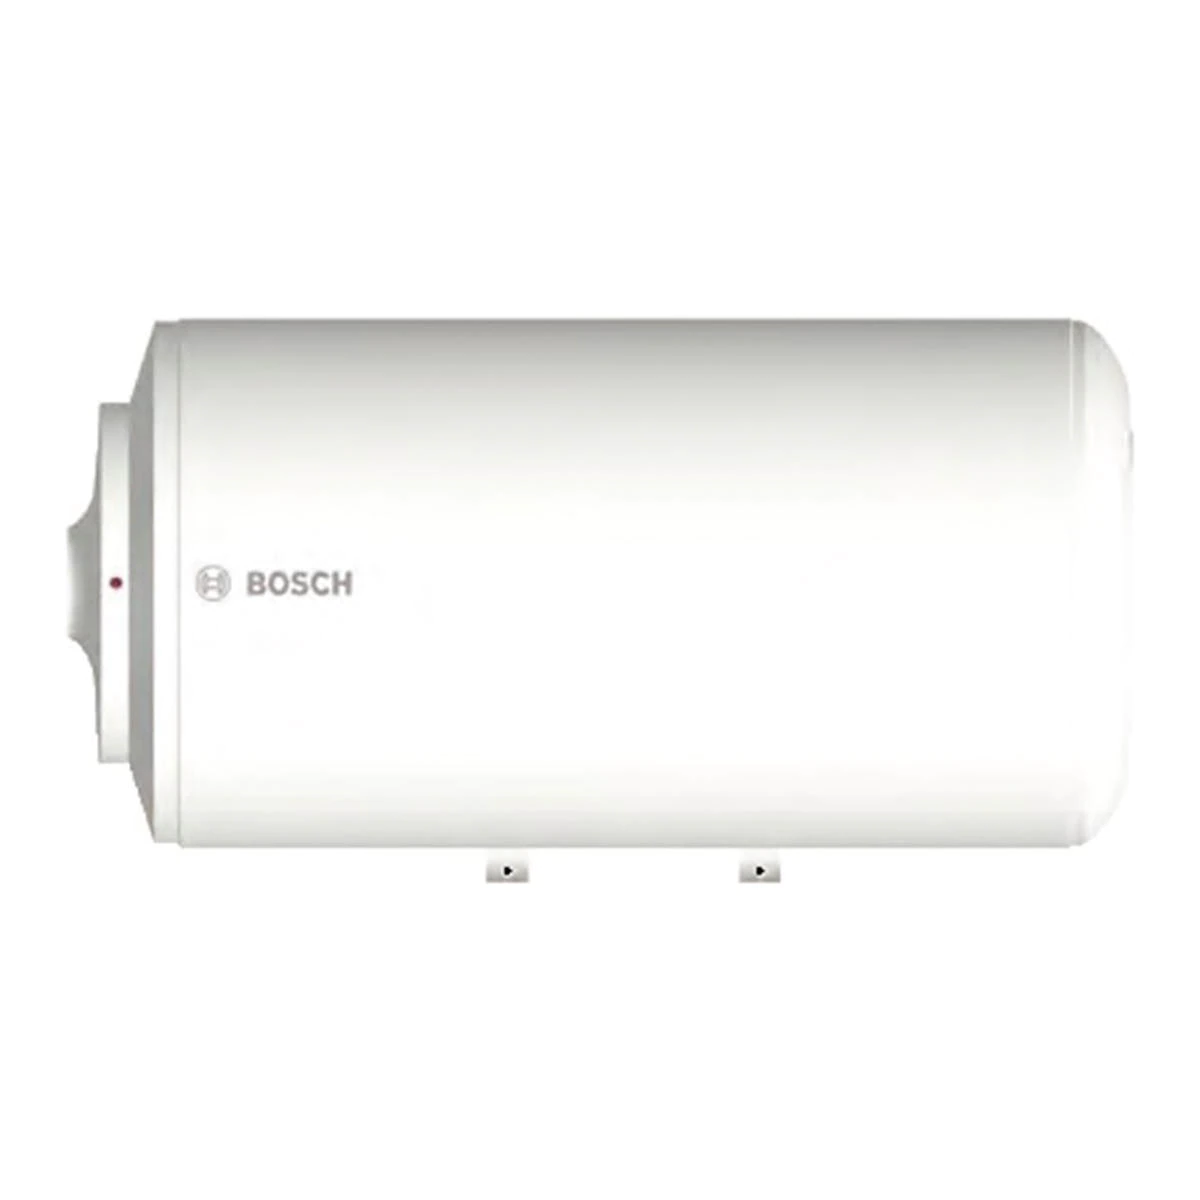 Termo eléctrico horizontal Bosch Tronic 2000T ES080-6 con capacidad de 80 litros